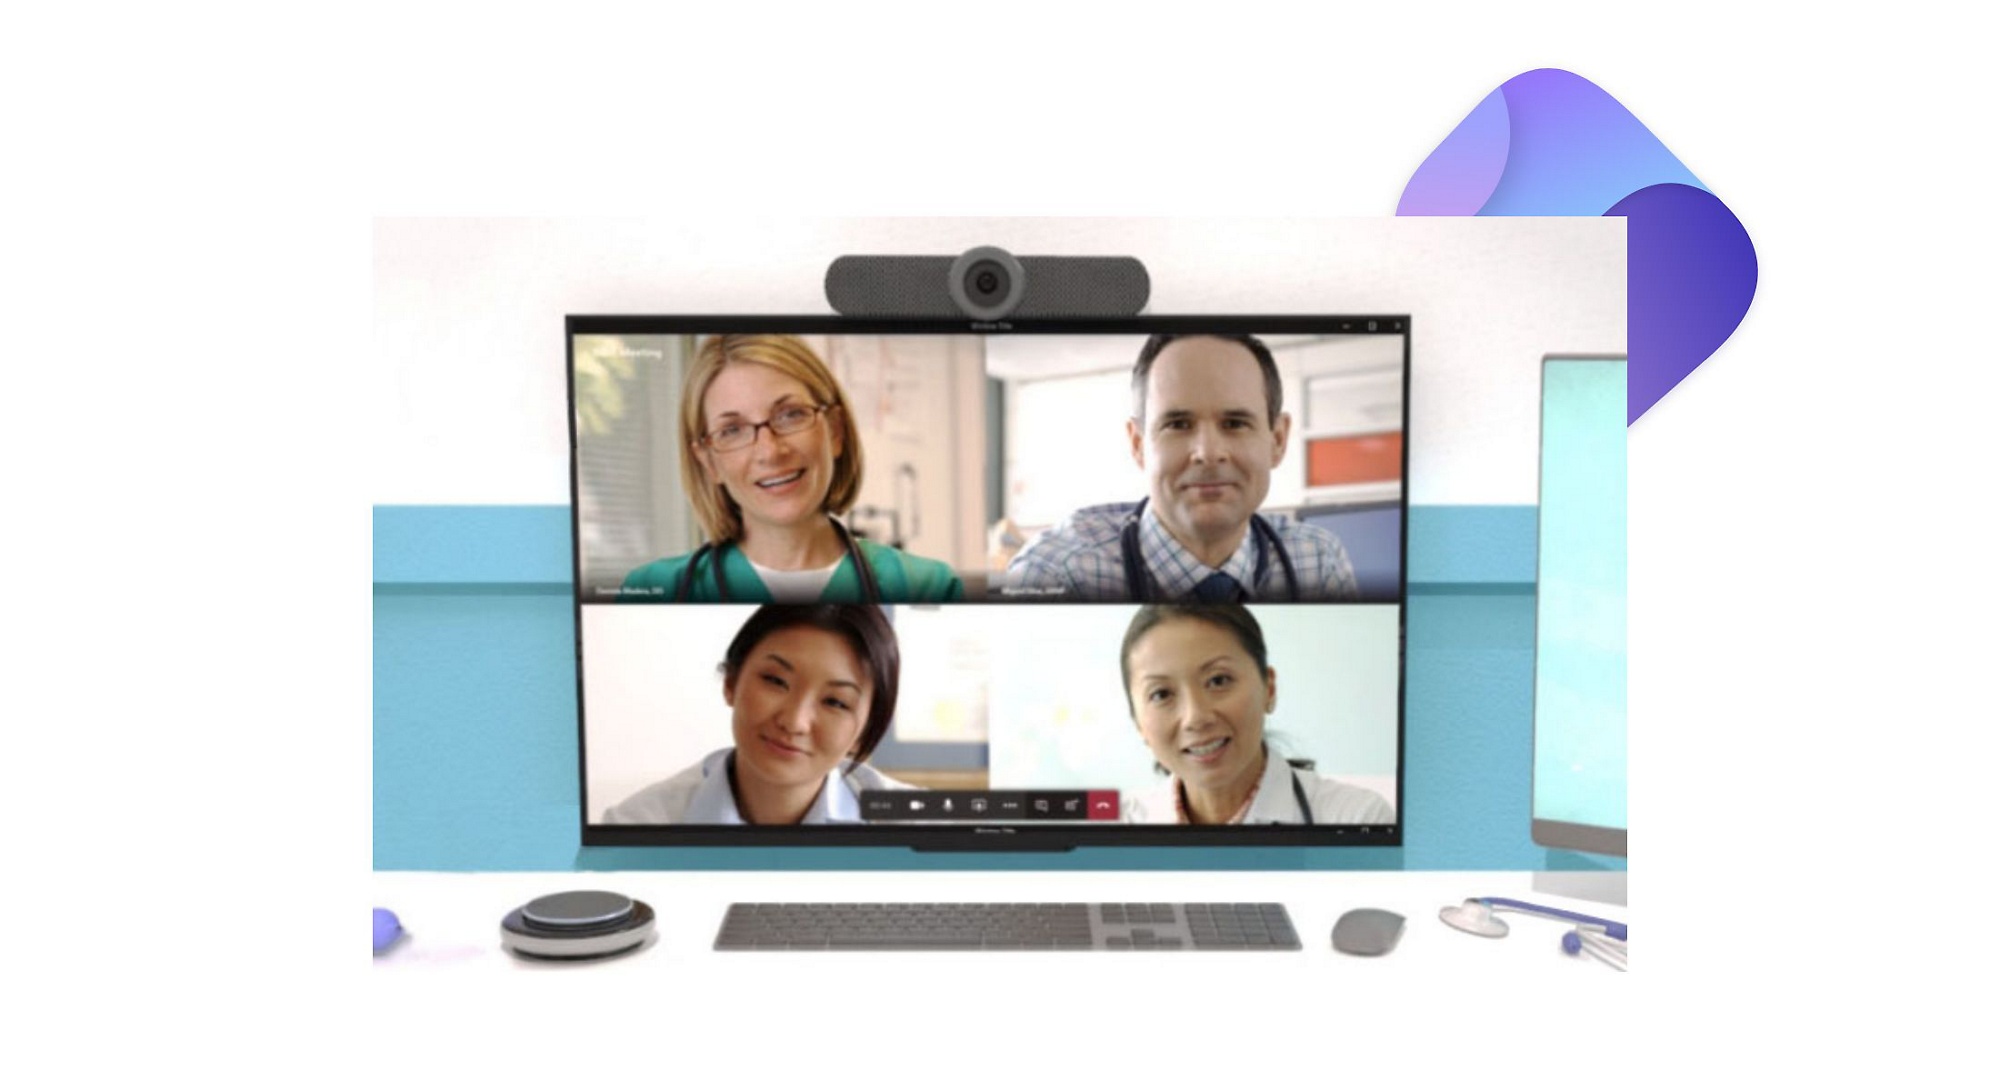 Una videollamada de Teams en curso en un escritorio con un monitor, una cámara y un parlante inteligente.